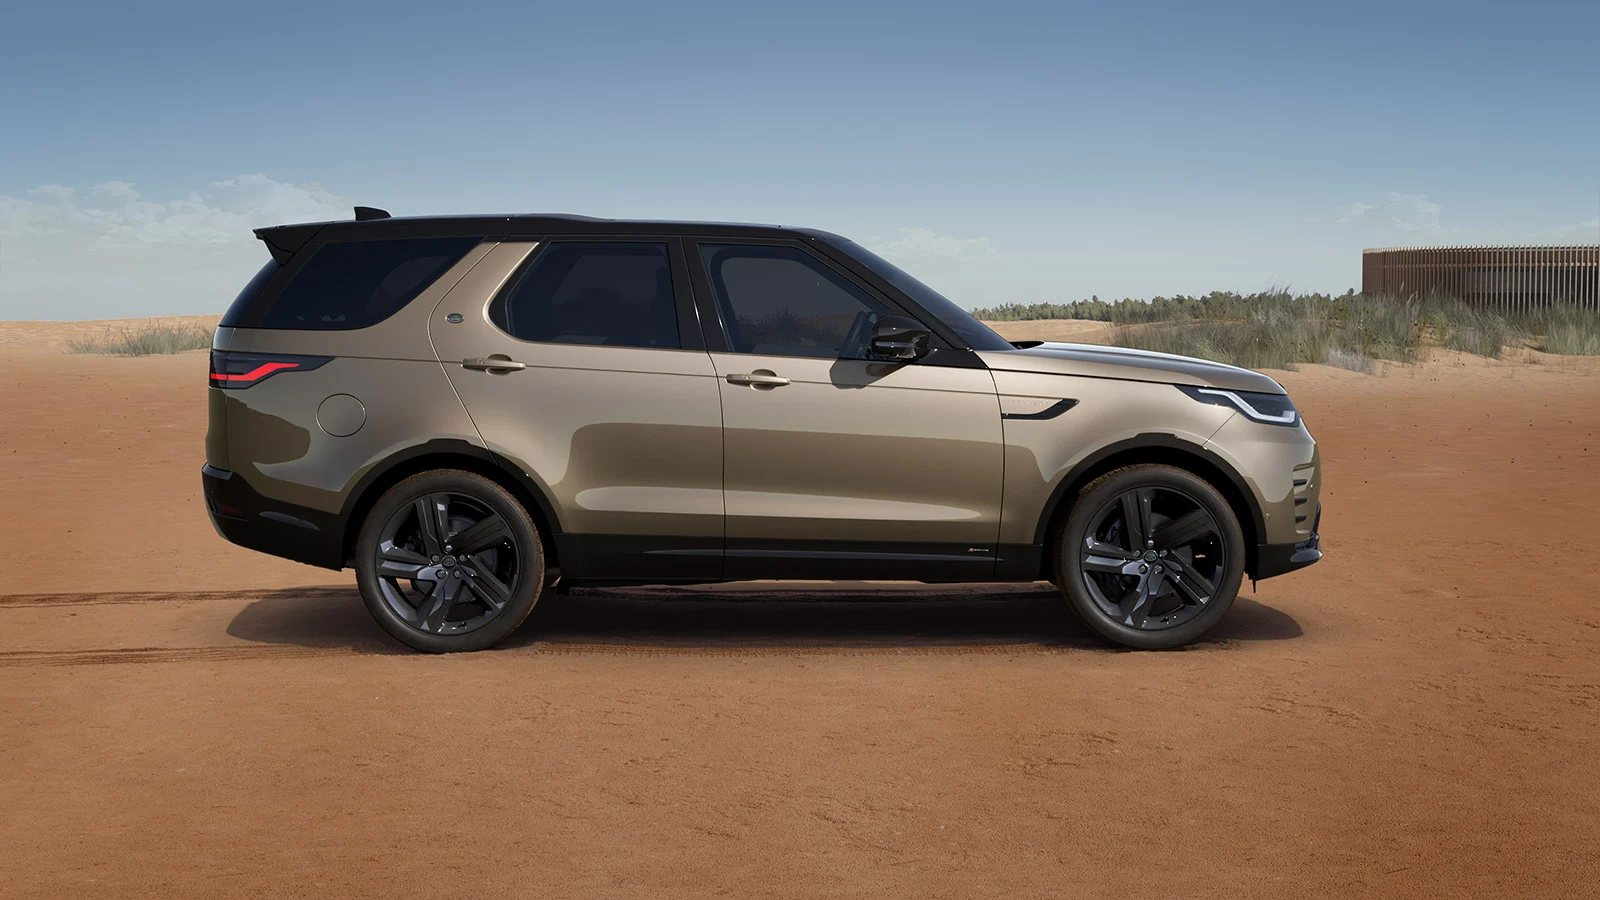 Dòng xe Discovery của Land Rover có khả năng vận hàng hiệu quả và linh hoạt